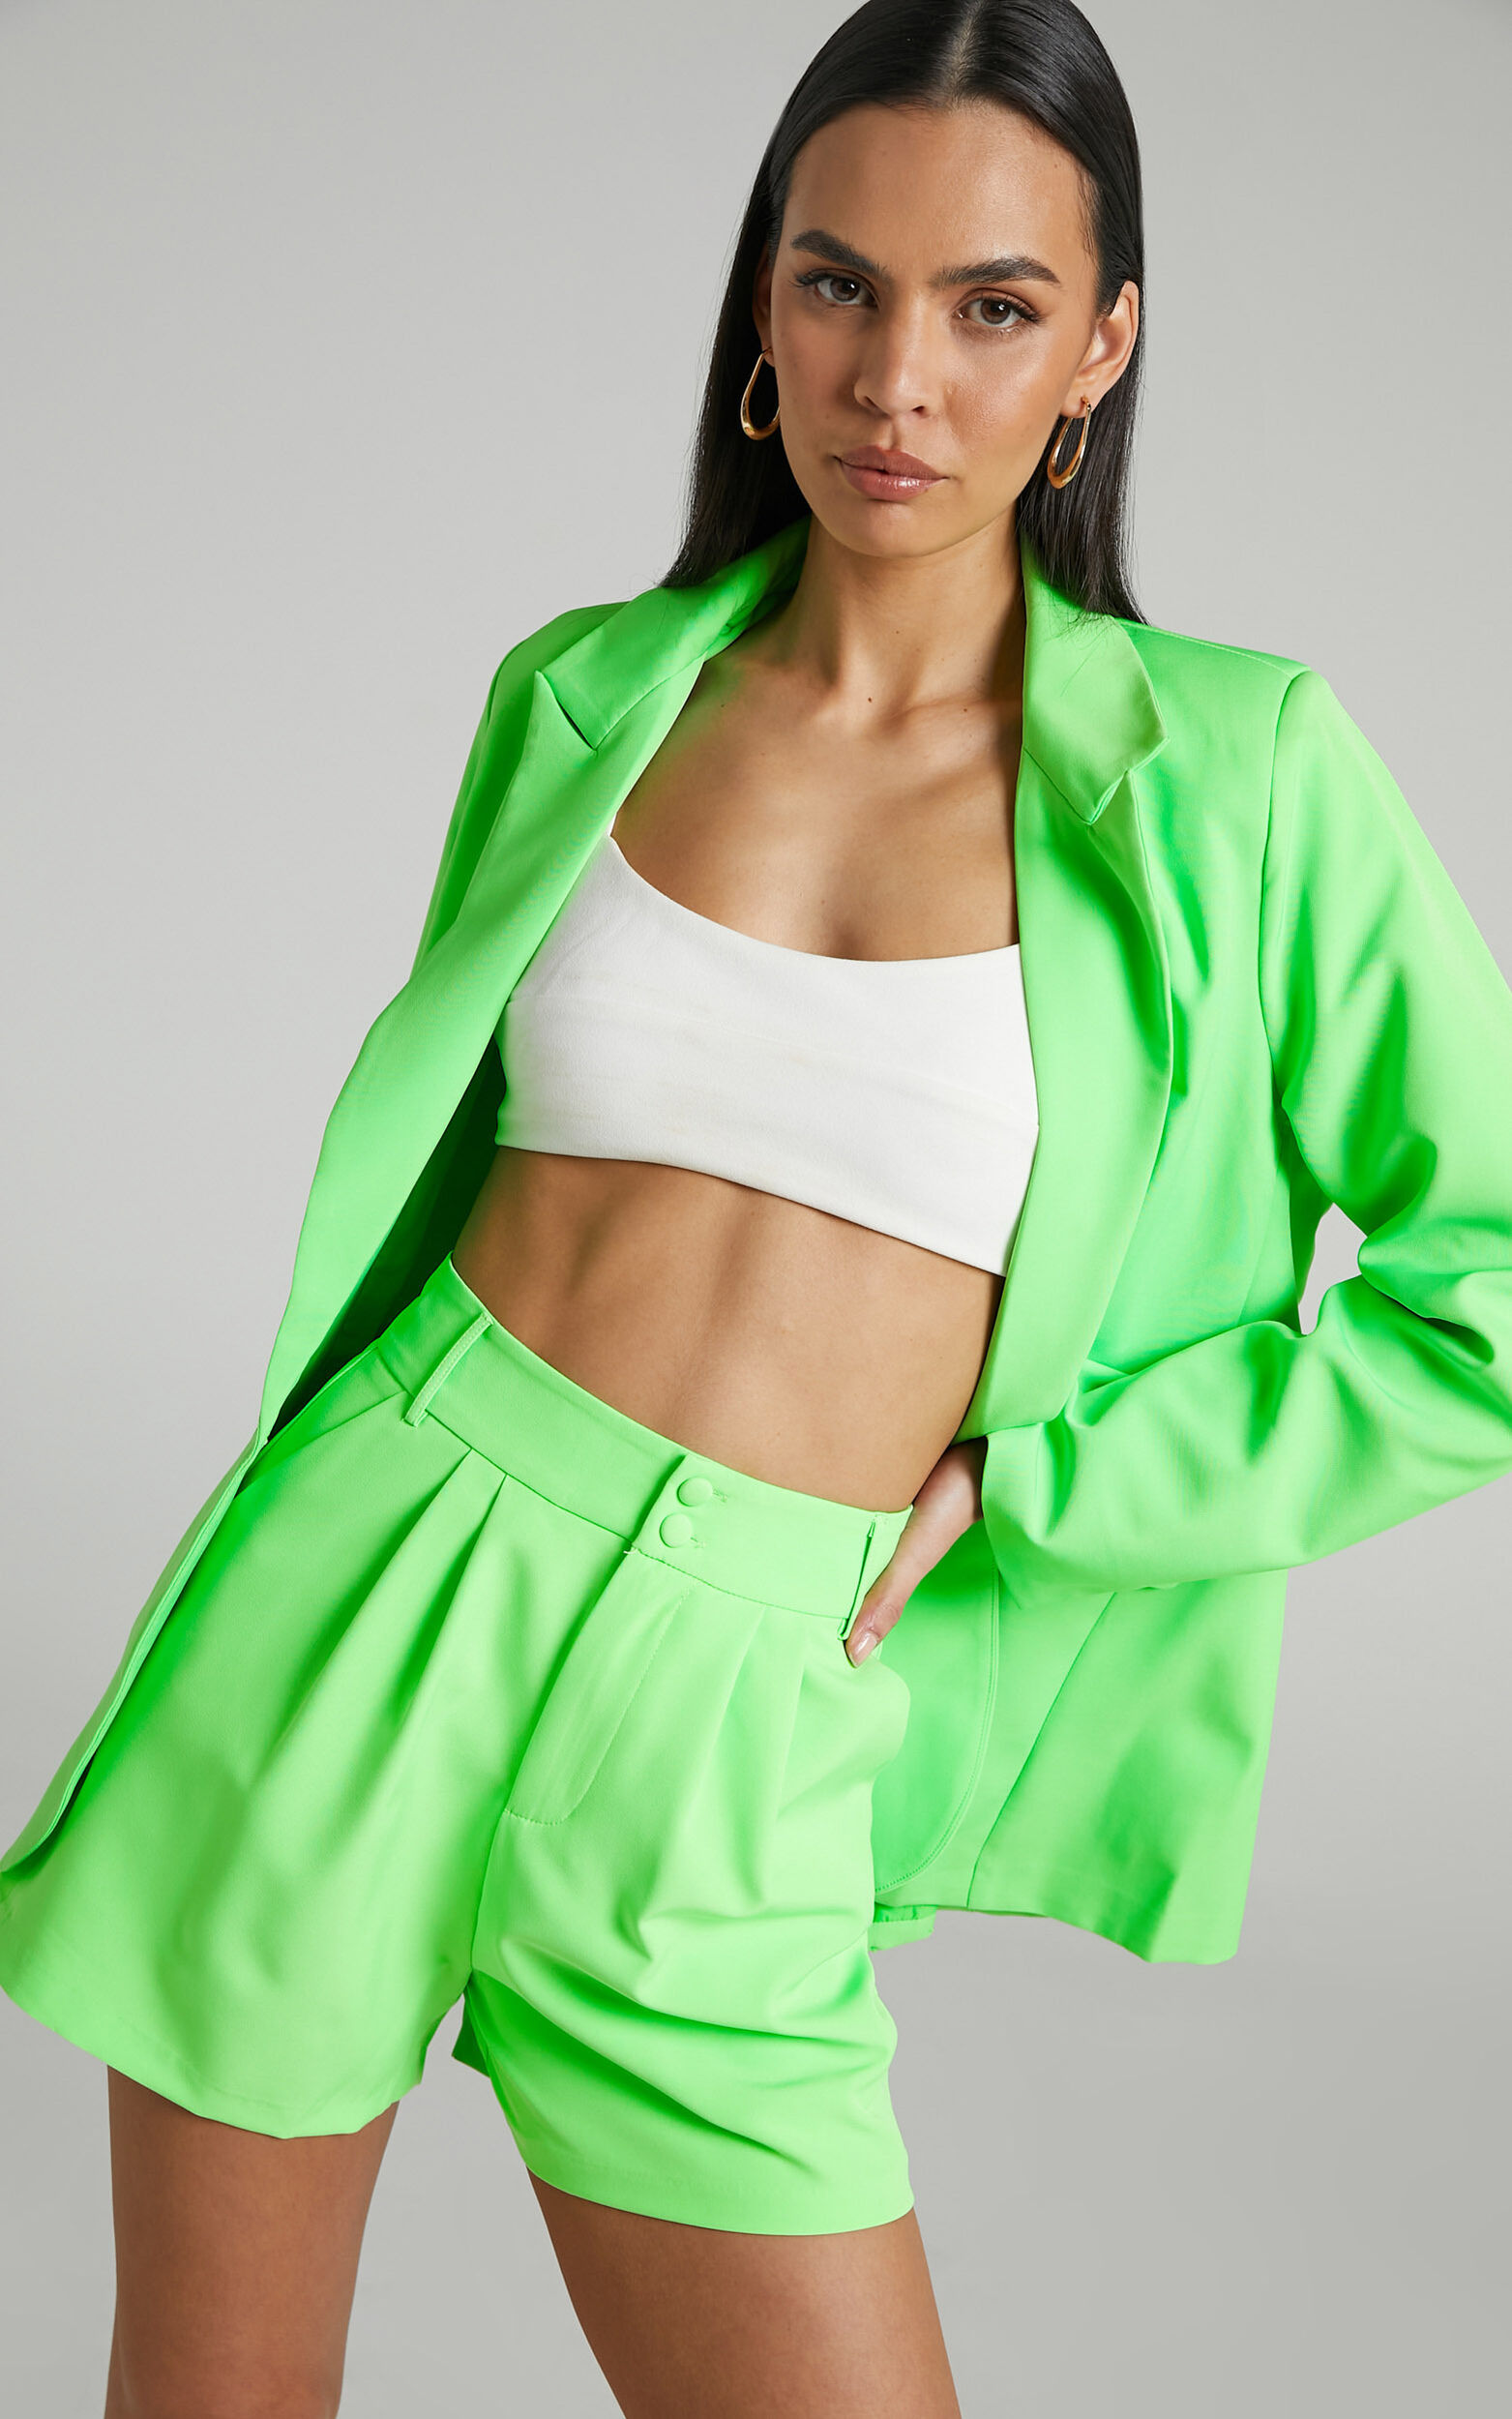 Ashesha Blazer - Tailored Suiting Blazer in Green - 04, GRN1